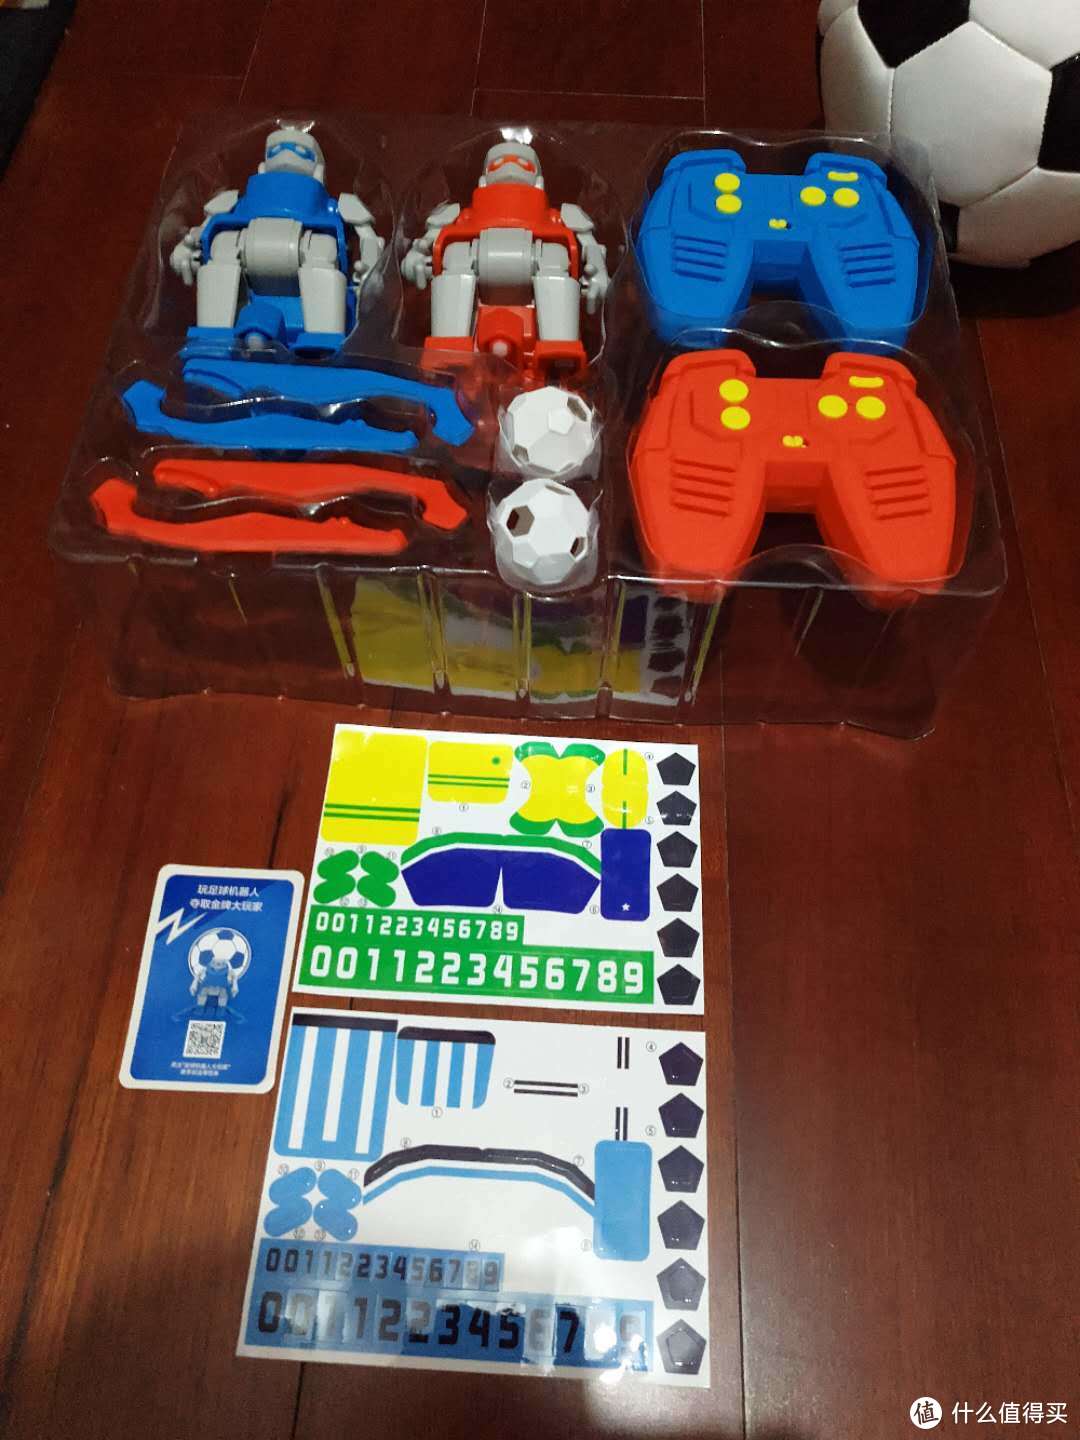 老少咸宜新玩具—MI 小米 SIMI 足球机器人开箱评测